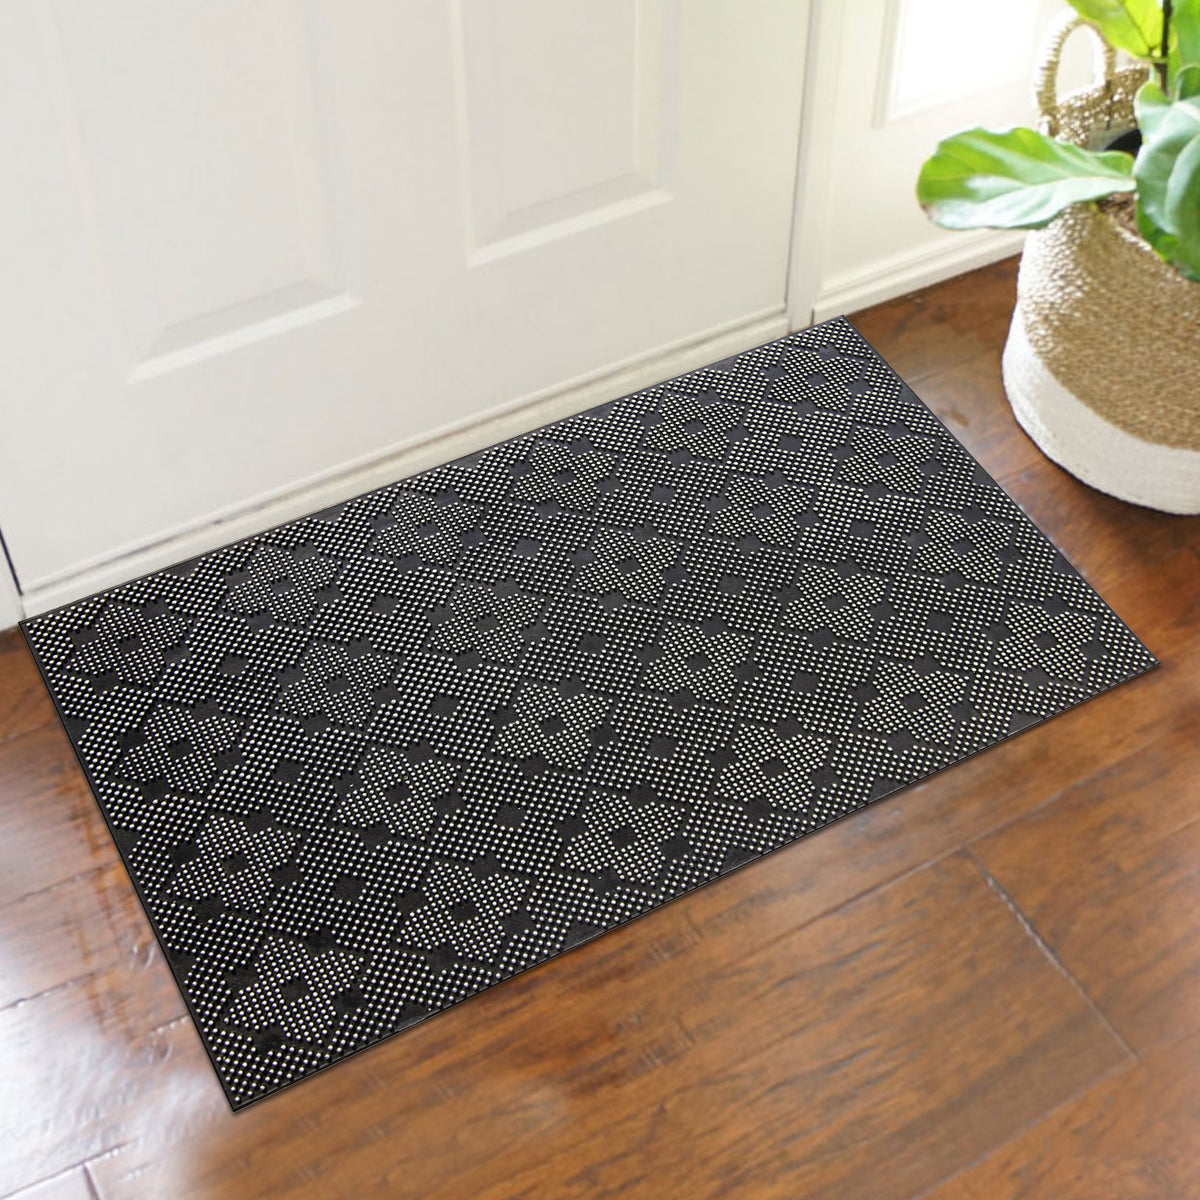 Lightweight Black Rubber Pin Floor Mat with Designer Pattern - OnlyMat